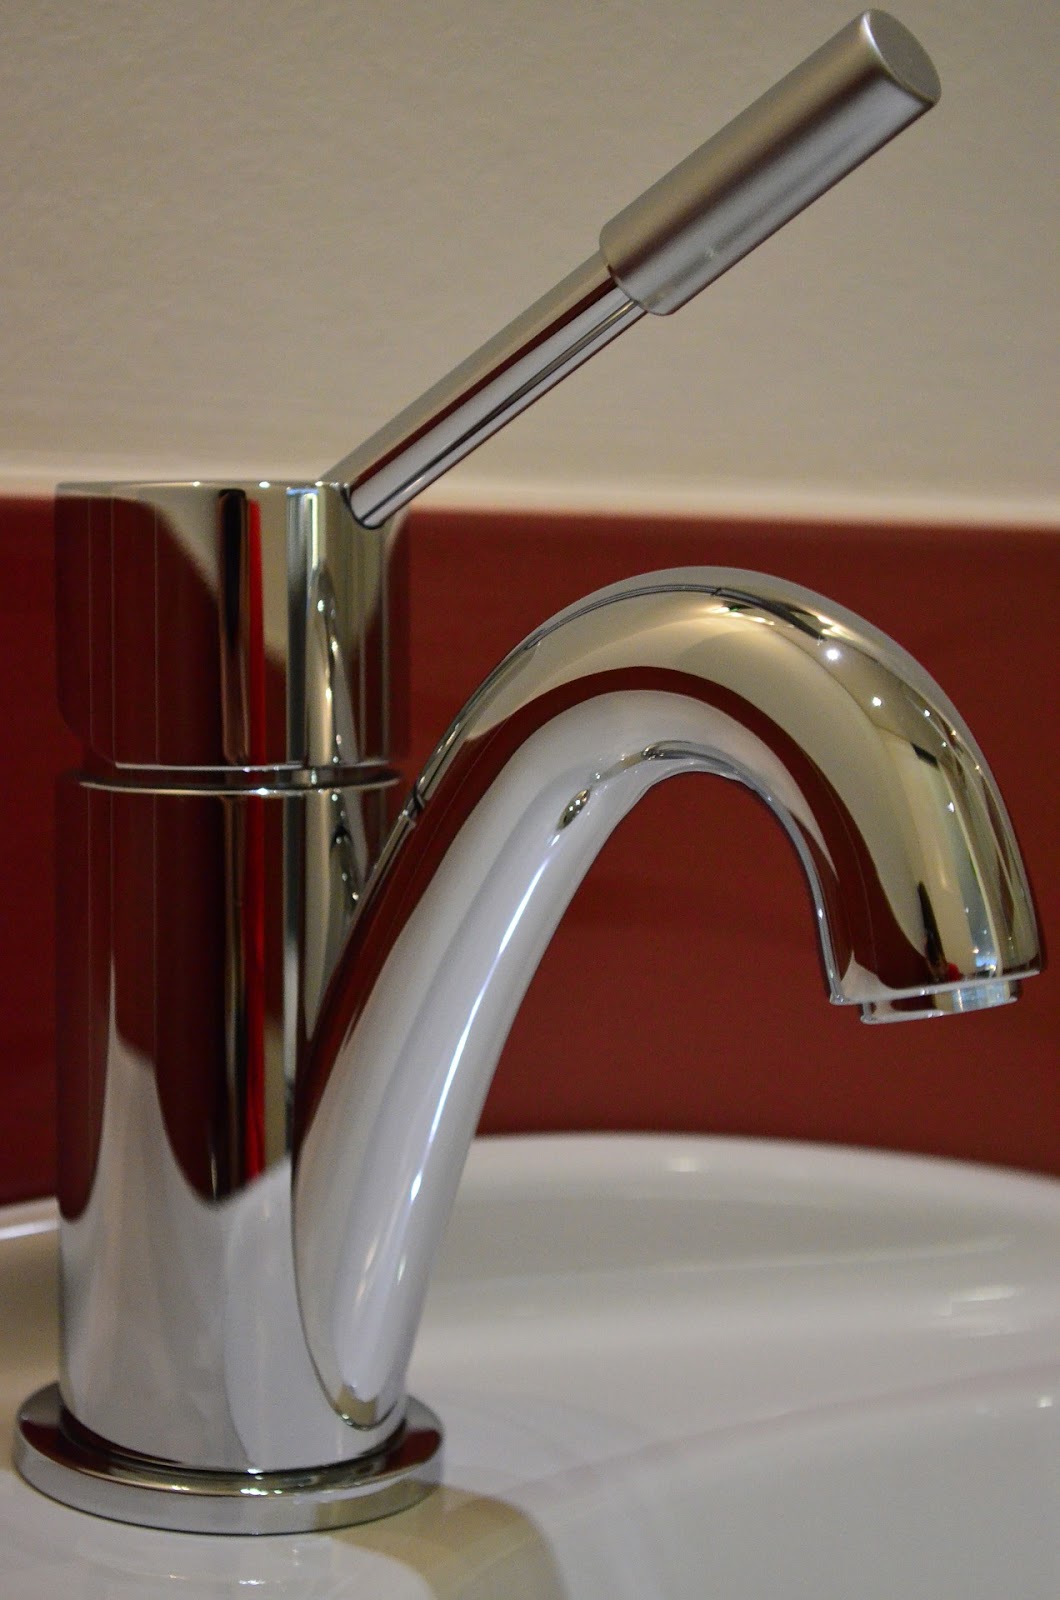 Accessible kitchen faucet